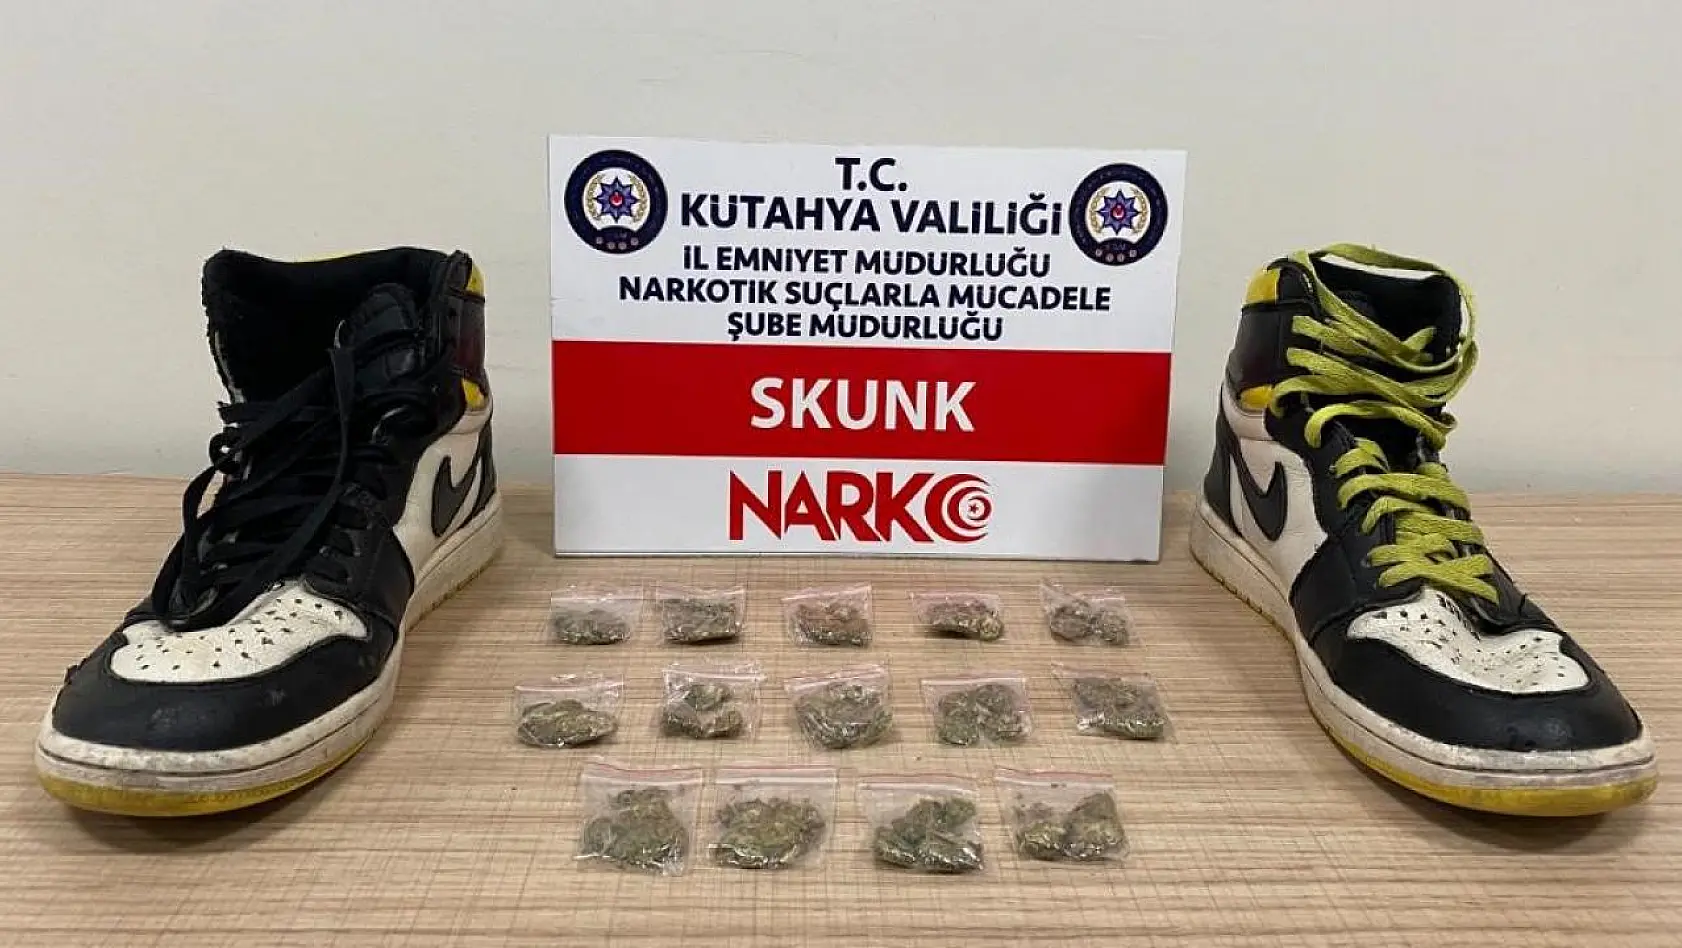 Kütahya'da ayakkabı tabanında uyuşturucuyla yakalanan şahıs tutuklandı